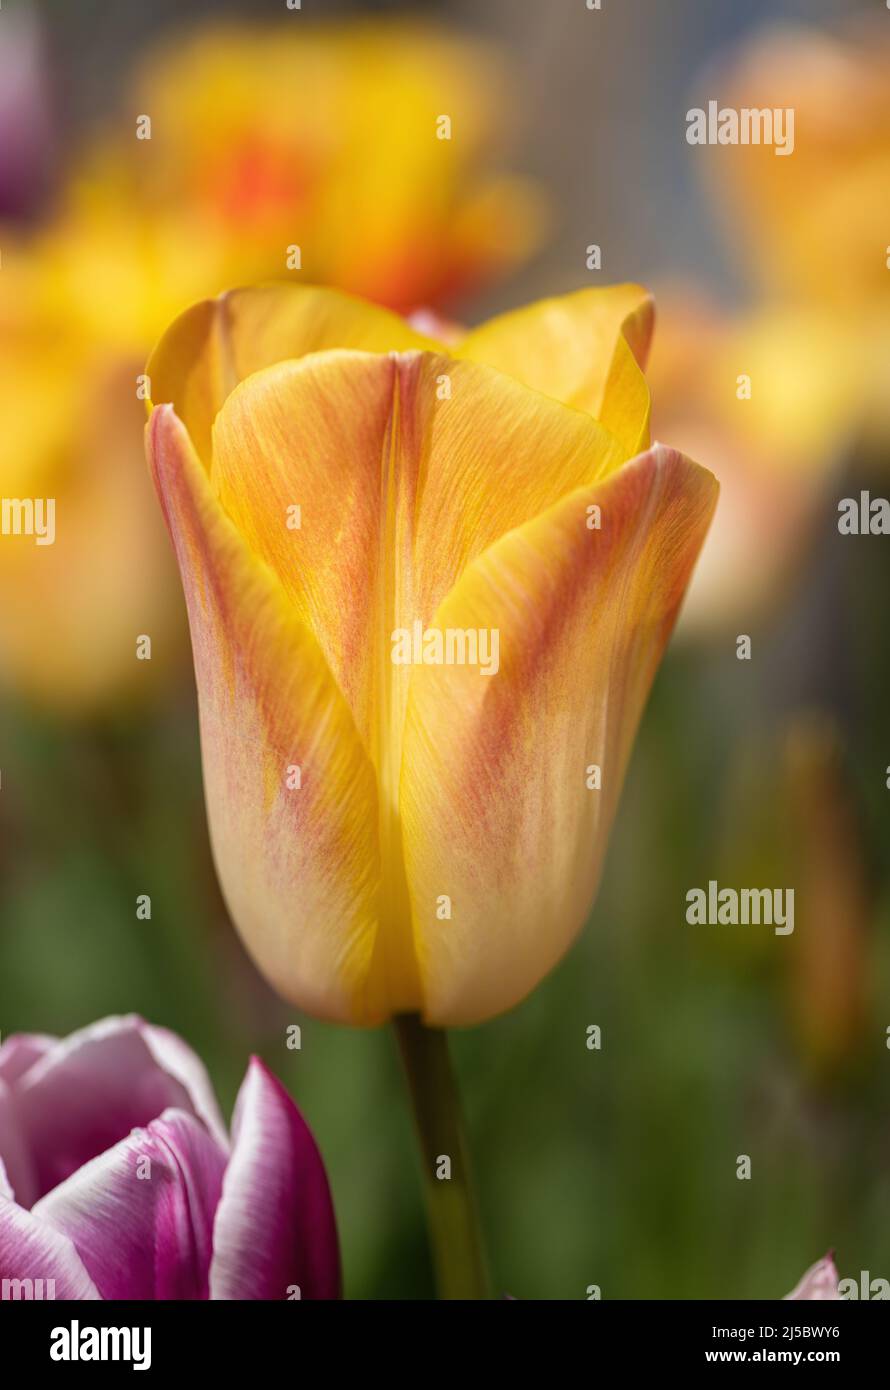 Primo piano di un bellissimo tulipano giallo con petali di colore rosso fioriti in un giardino di primavera confine in Inghilterra, Regno Unito Foto Stock